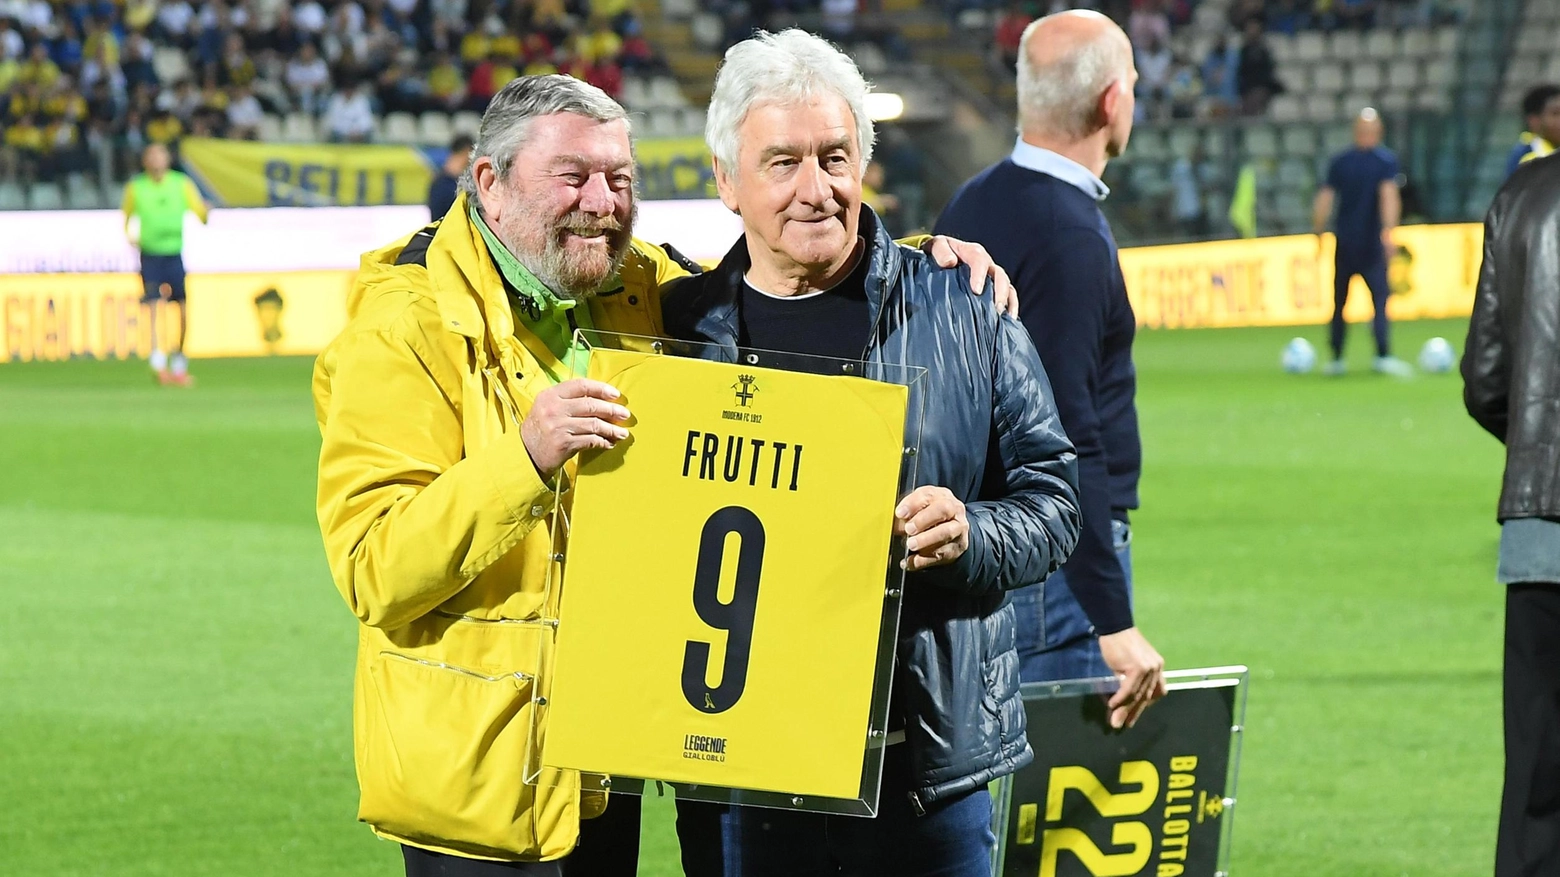 L'ex calciatore Sauro Frutti torna a Modena dopo 40 anni per sostenere la squadra e ricordare i successi passati. Esprime preoccupazione per la situazione attuale e auspica una salvezza con Bisoli. Il Modena si prepara per la sfida contro l'Ascoli.